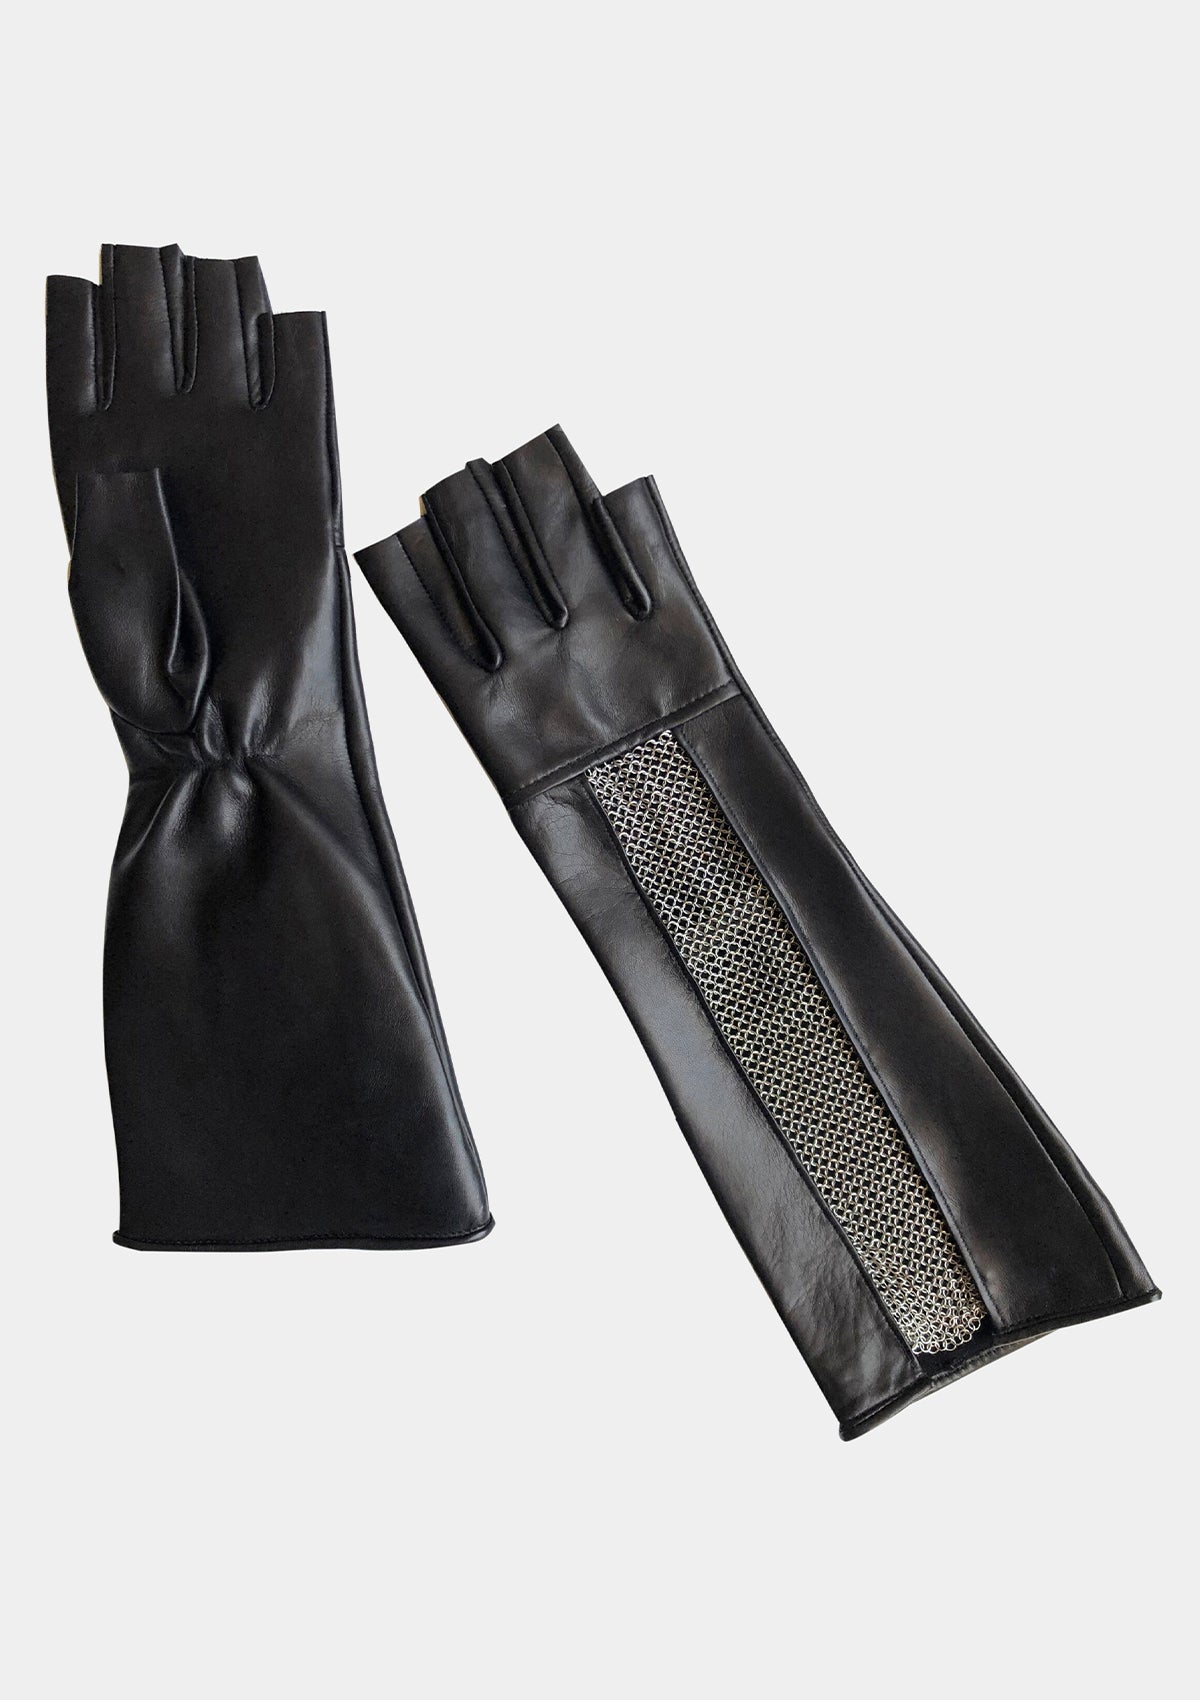 Long open chain mesh fingerless leather women men gloves